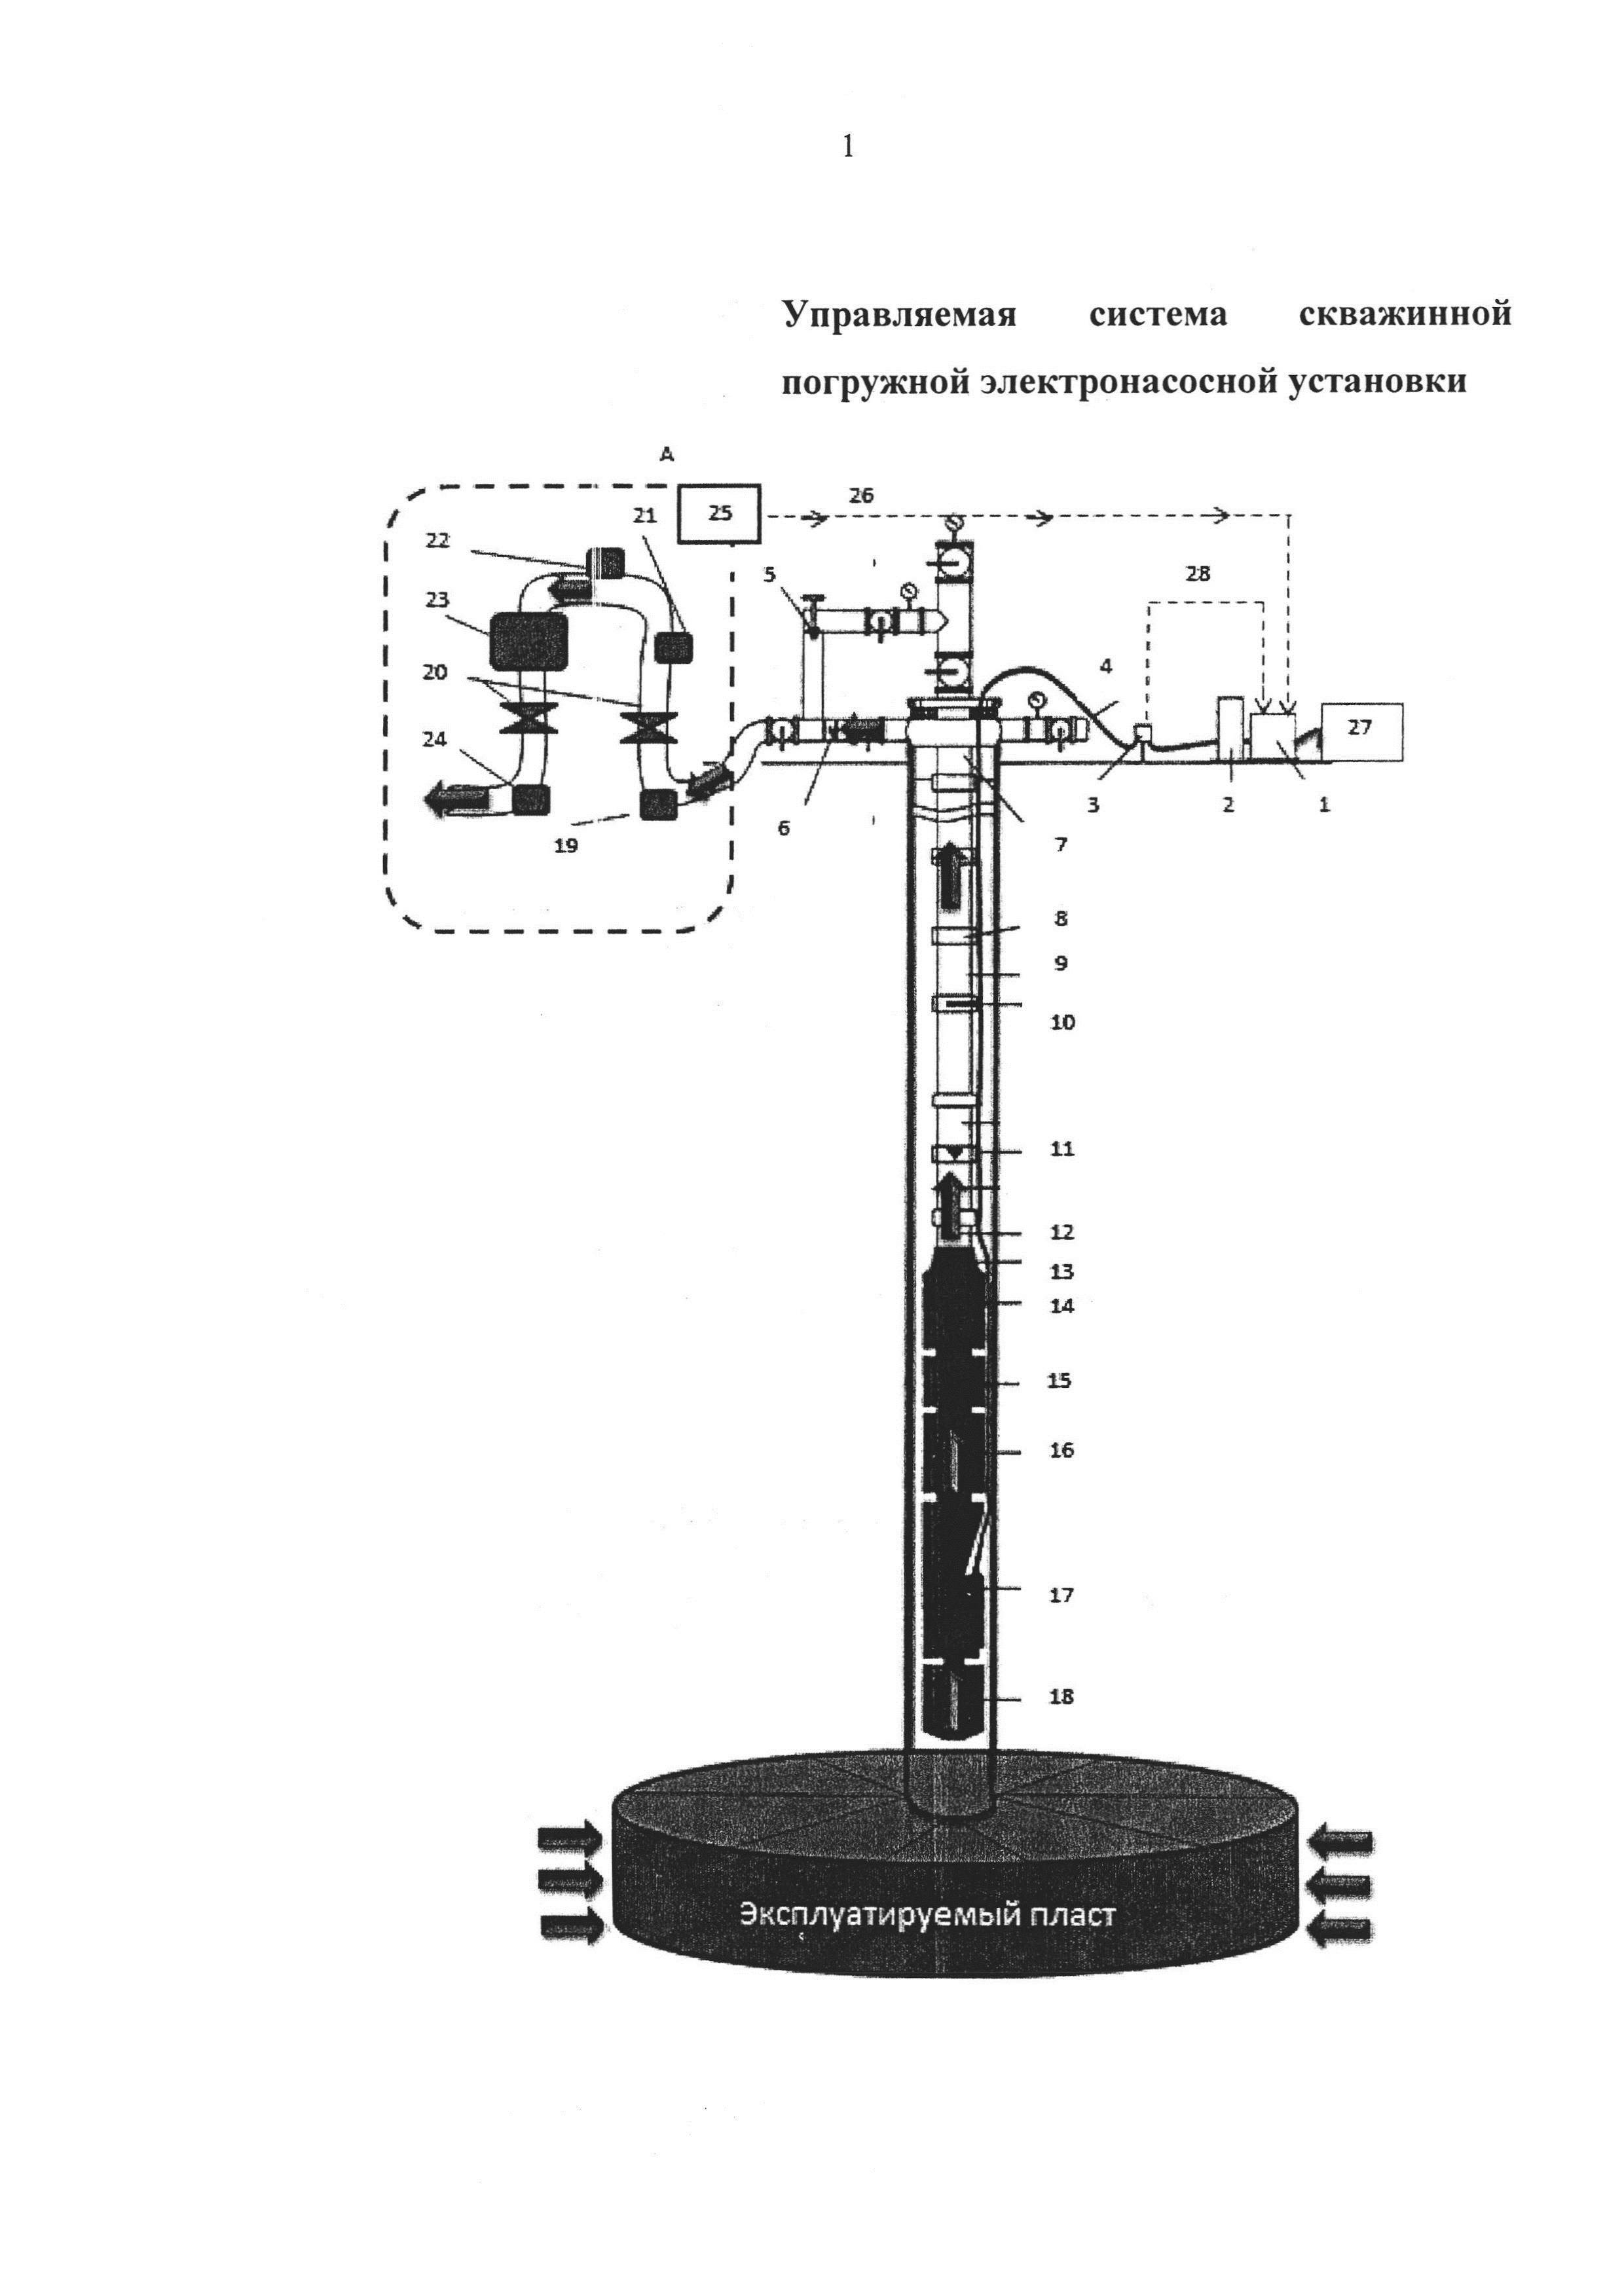 Управляемая система скважинной погружной электронасосной установки